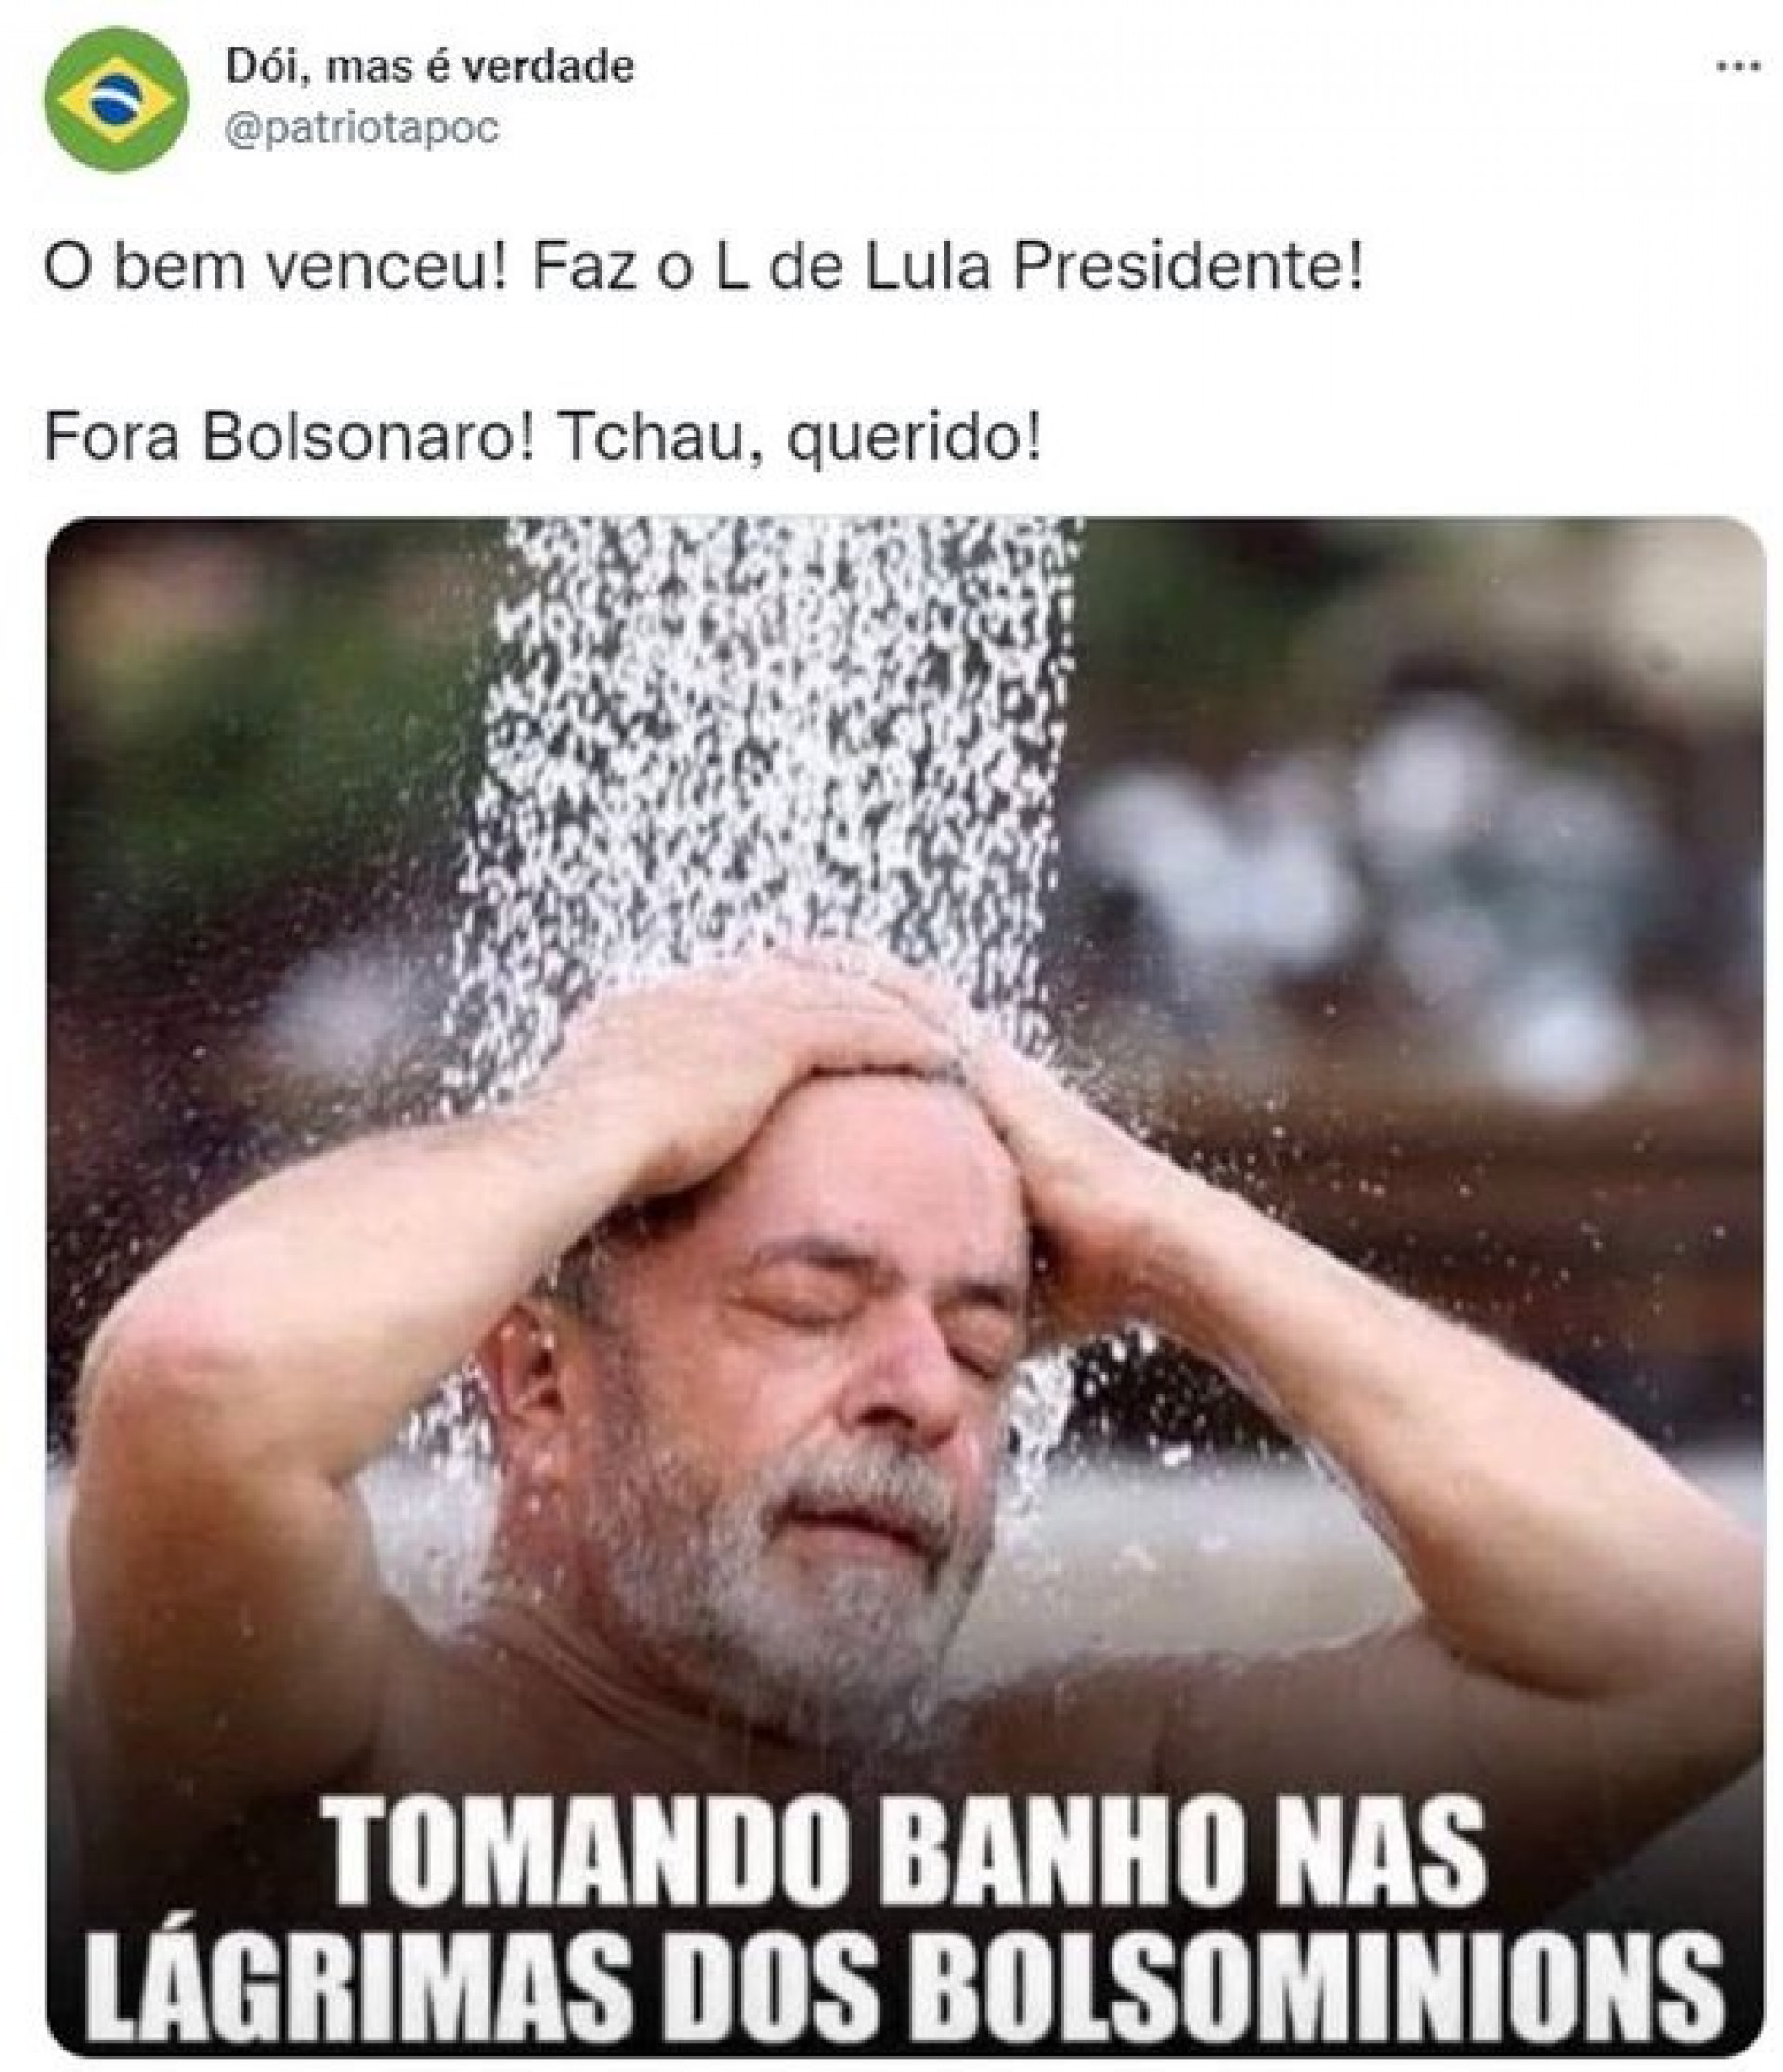 Memes com imagens de Lula foram compartilhados nas redes sociais na noite do domingo, 30, após a confirmação de sua vitória